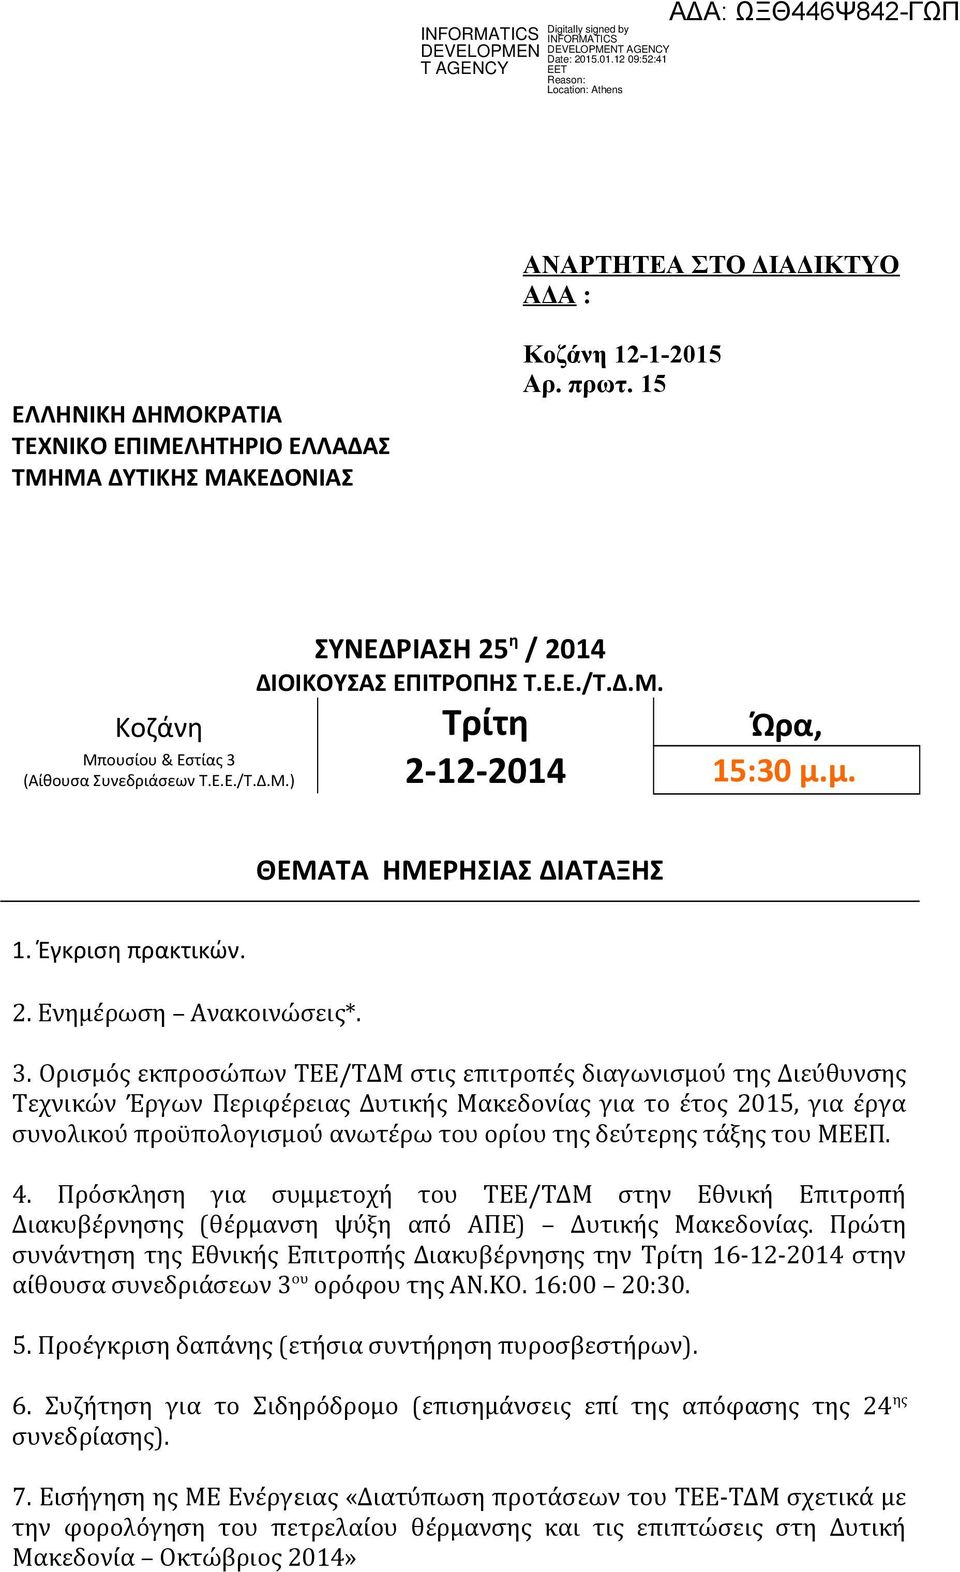 Ορισμός εκπροσώπων ΤΕΕ/ΤΔΜ στις επιτροπές διαγωνισμού της Διεύθυνσης Τεχνικών Έργων Περιφέρειας Δυτικής Μακεδονίας για το έτος 2015, για έργα συνολικού προϋπολογισμού ανωτέρω του ορίου της δεύτερης